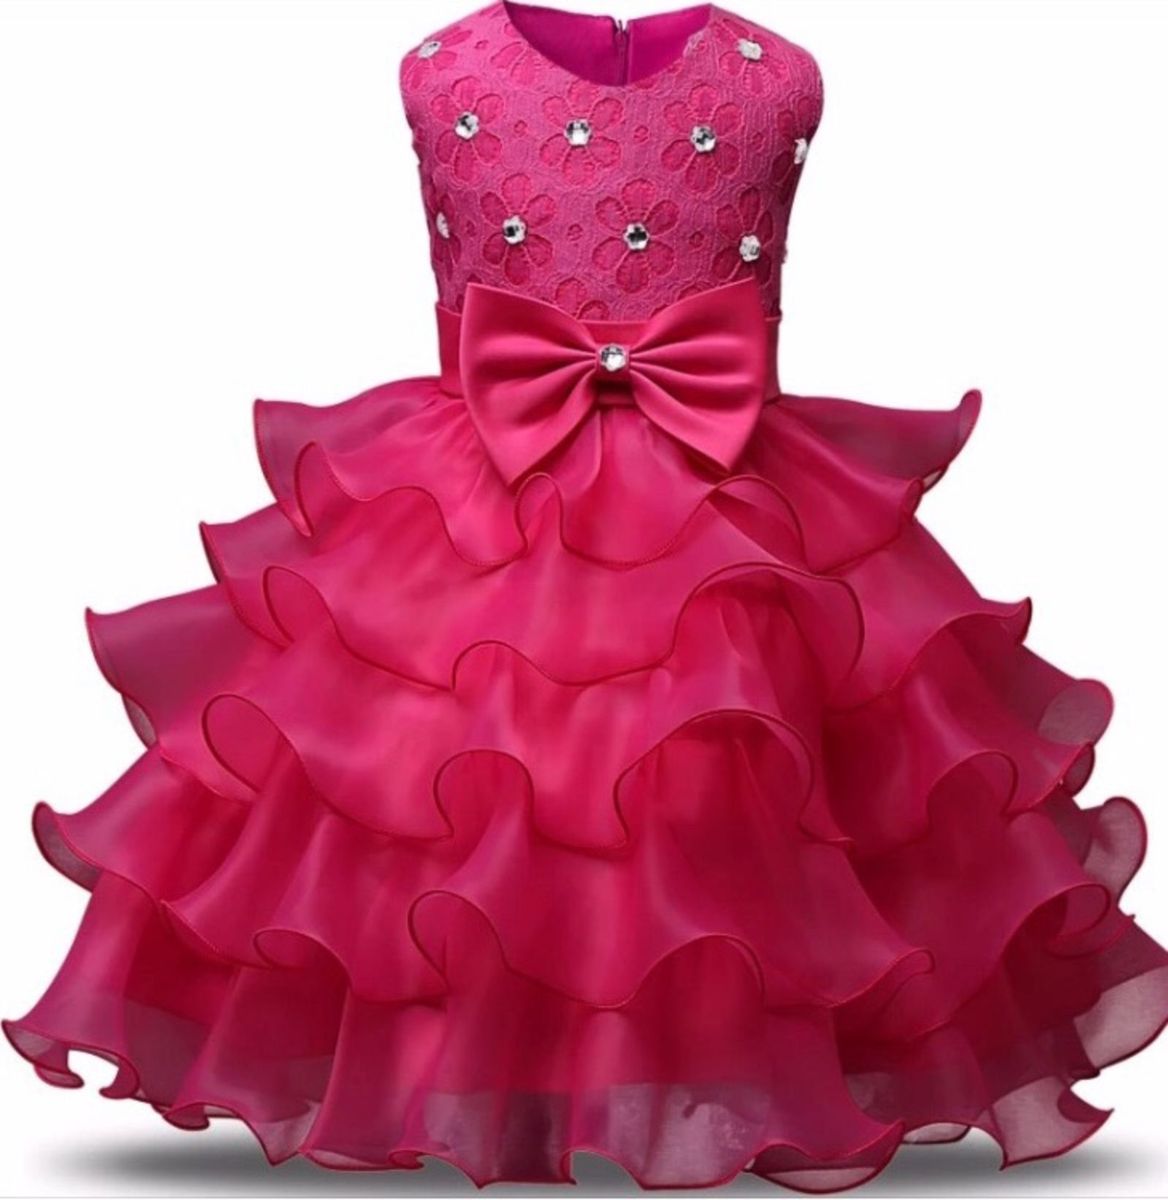 vestido formatura infantil rosa